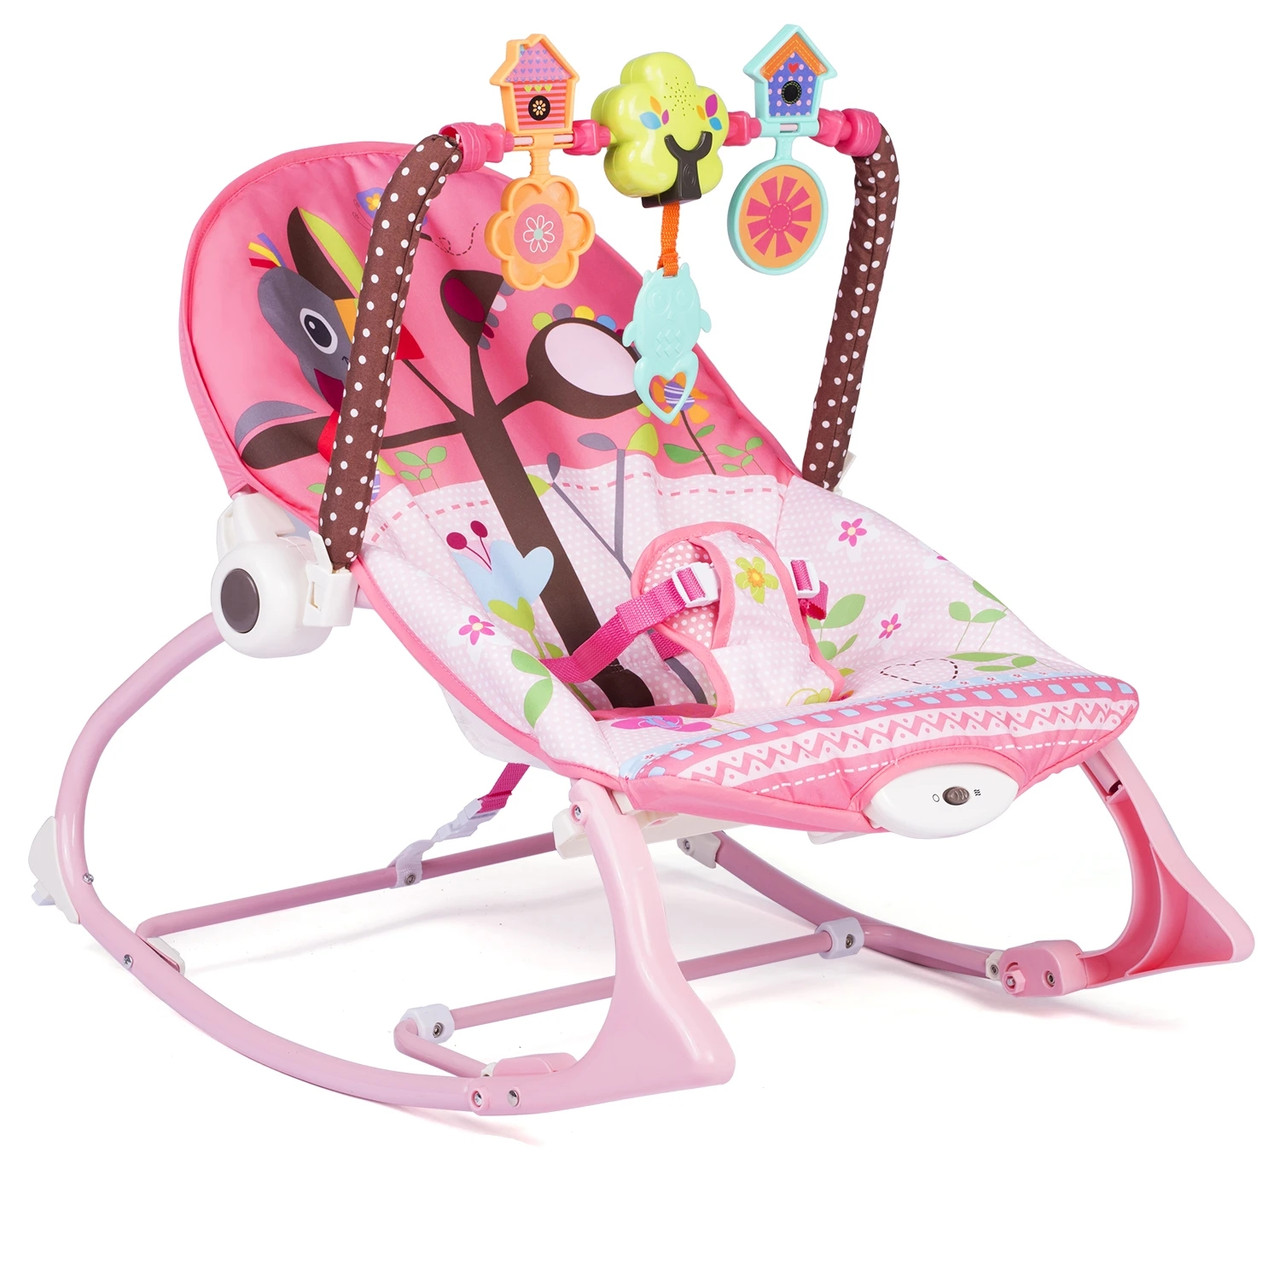 Багатофункціональний дитячий шезлонг 3 в 1 "Ricokids", крісло-гойдалка з вібрацією й музикою, рожевий